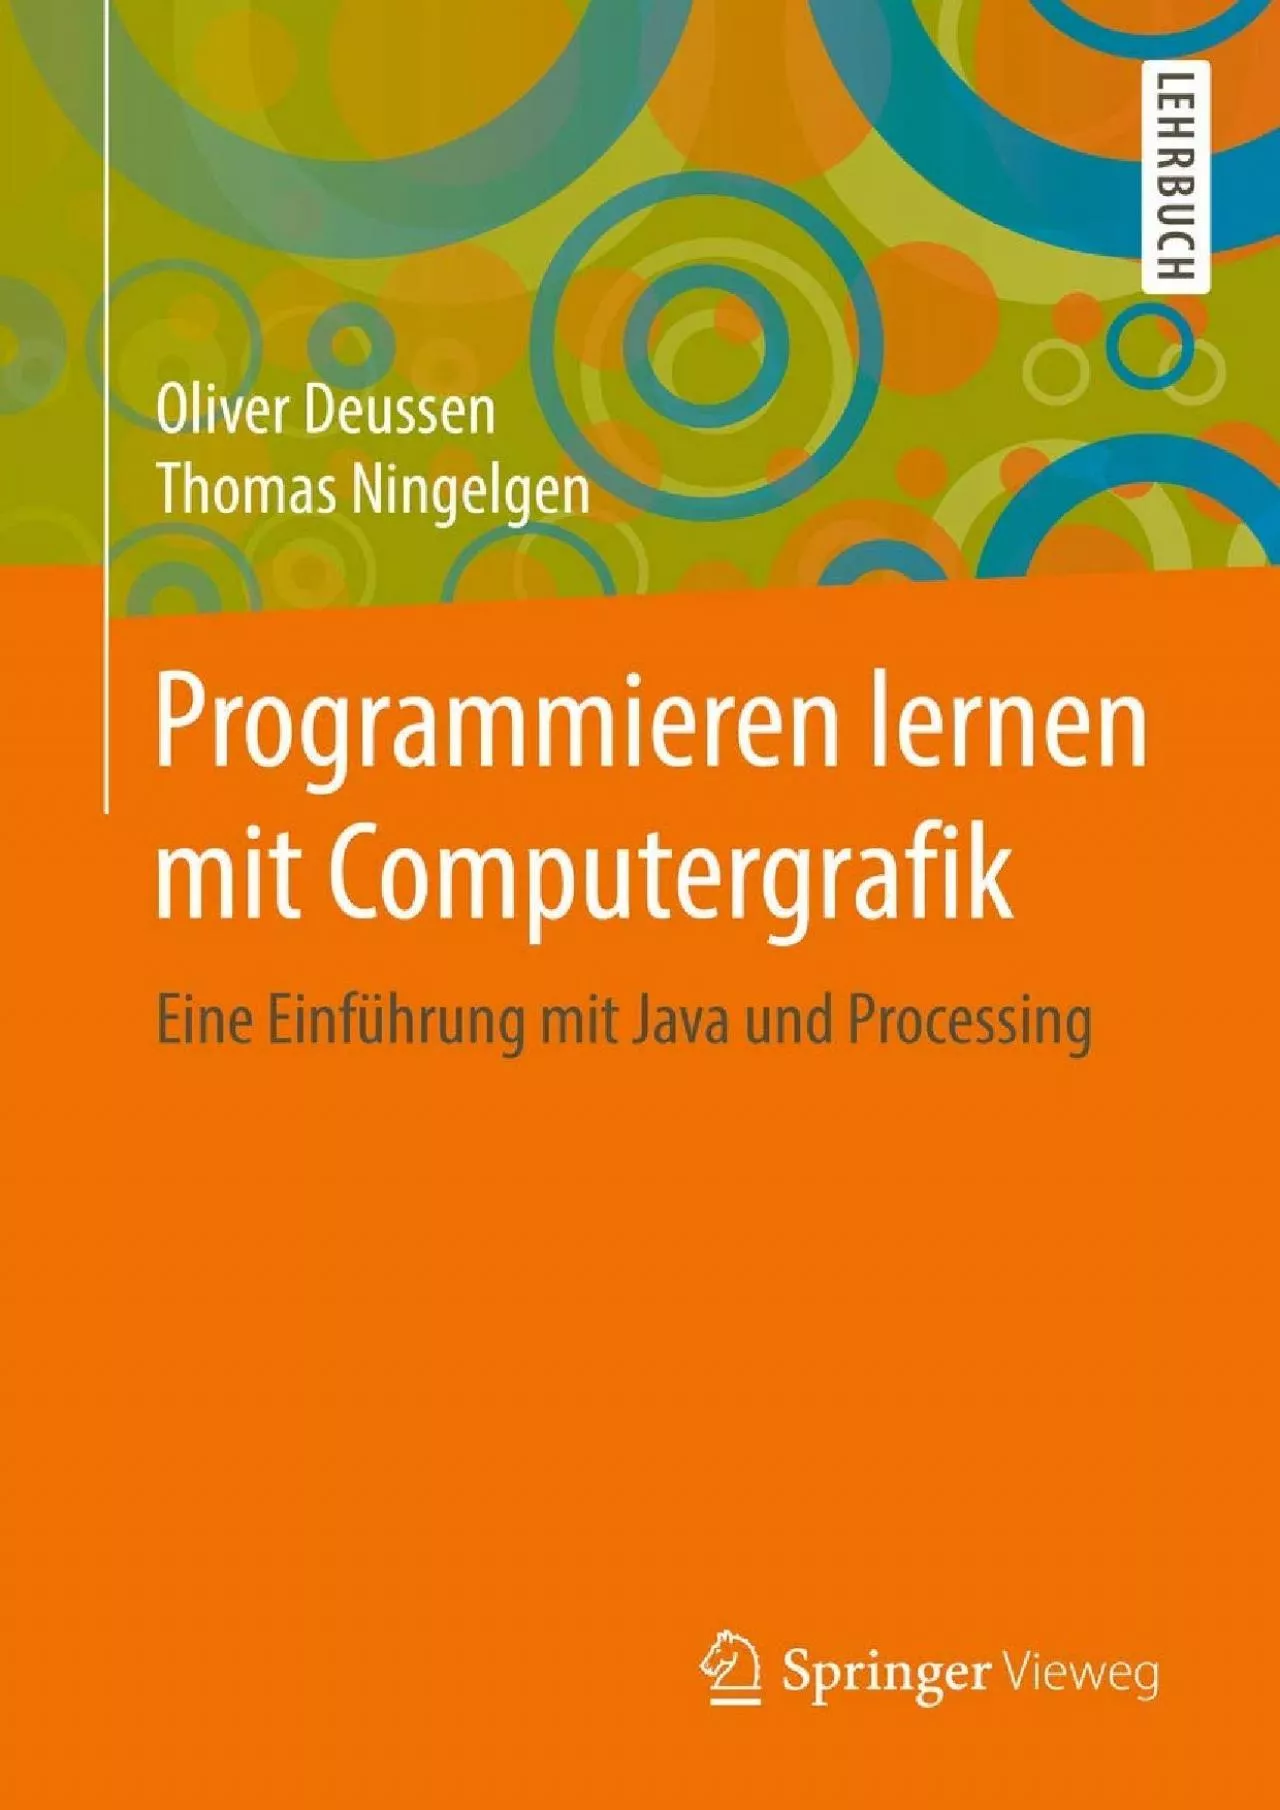 [READ]-Programmieren lernen mit Computergrafik: Eine Einführung mit Java und Processing